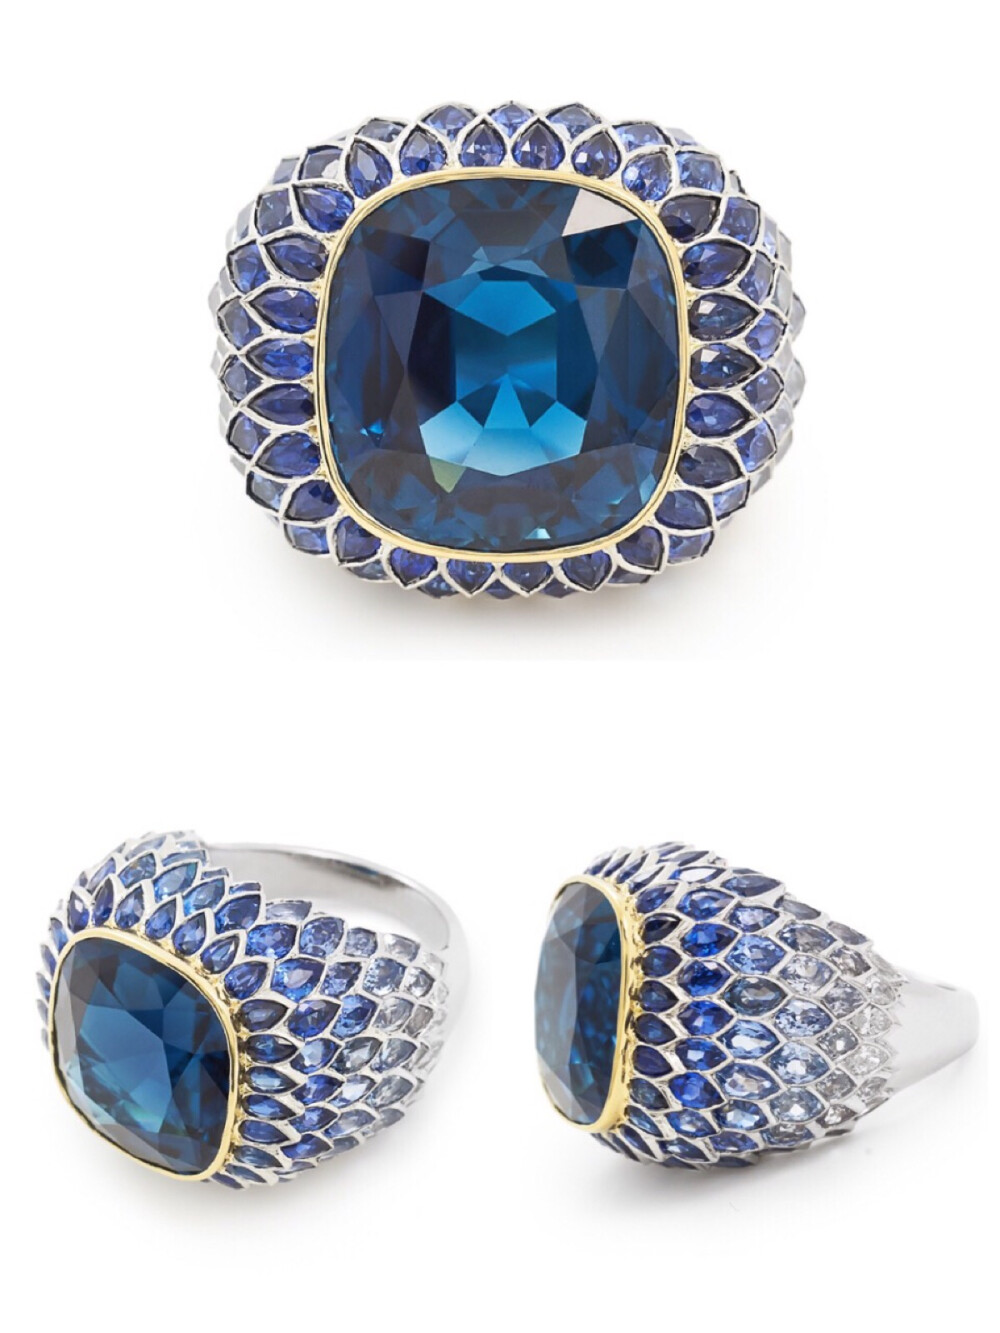 蓝色调戒指，来自 Tiffany 今年推出的 Blue Book 系列，以一颗蓝色碧玺为主石，戒面周围由蓝宝石过渡为无色钻石，呈现深海至近海不同层次的色彩。